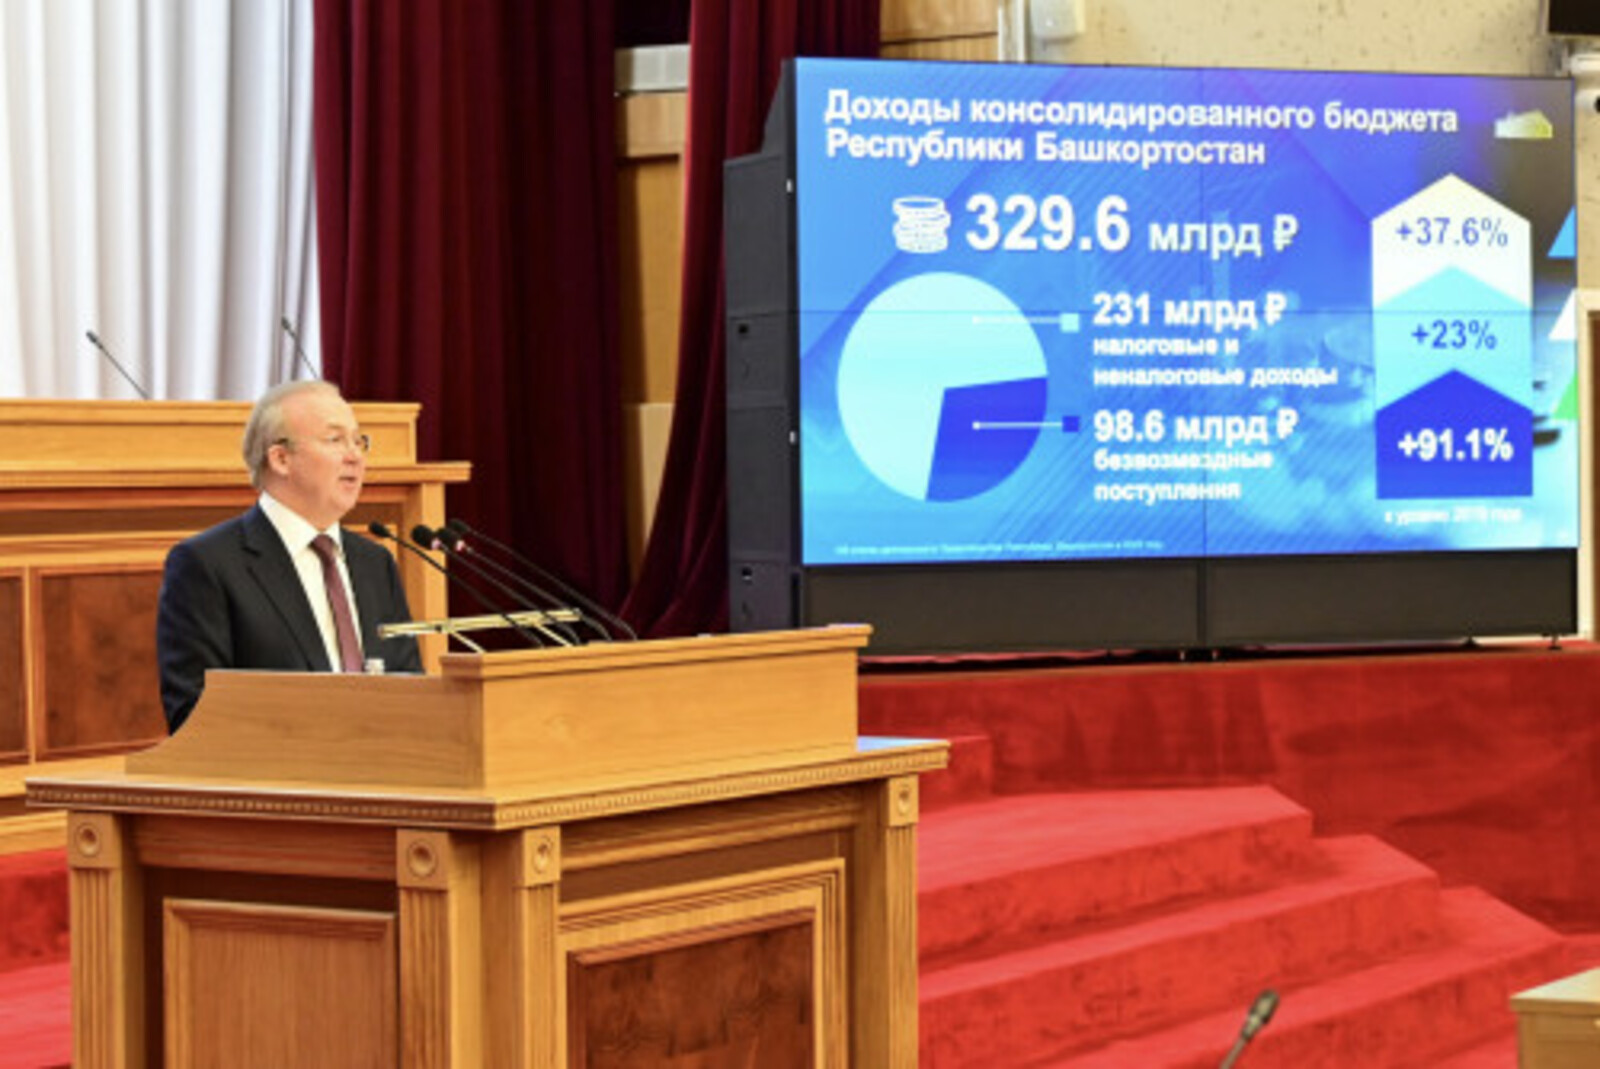 Бюджет Республики Башкортостан сохраняет социальную направленность, сбалансированность и стабильность